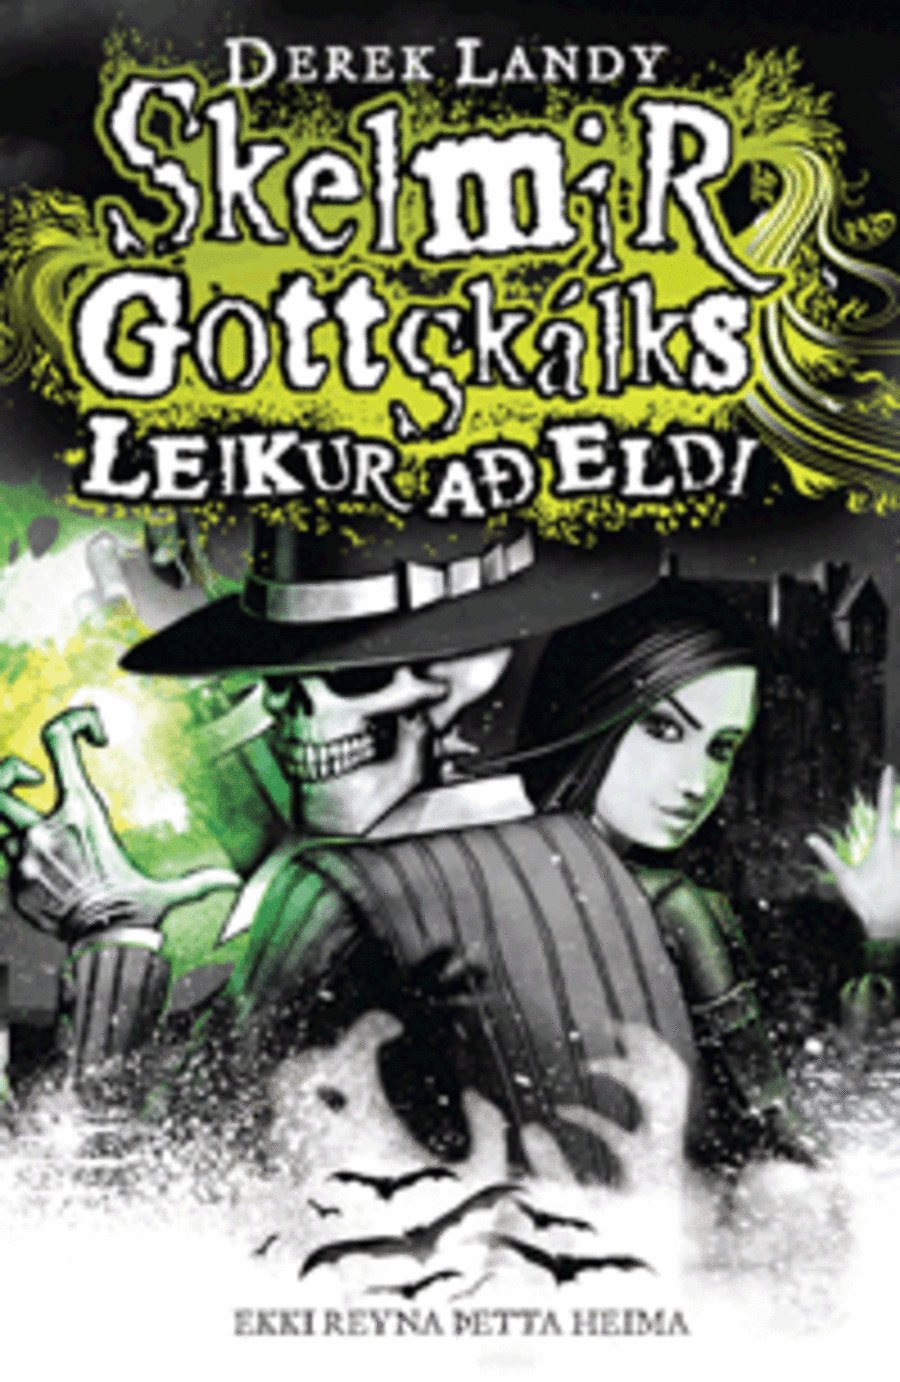 Skelmir Gottskálks - Leikur að eldi